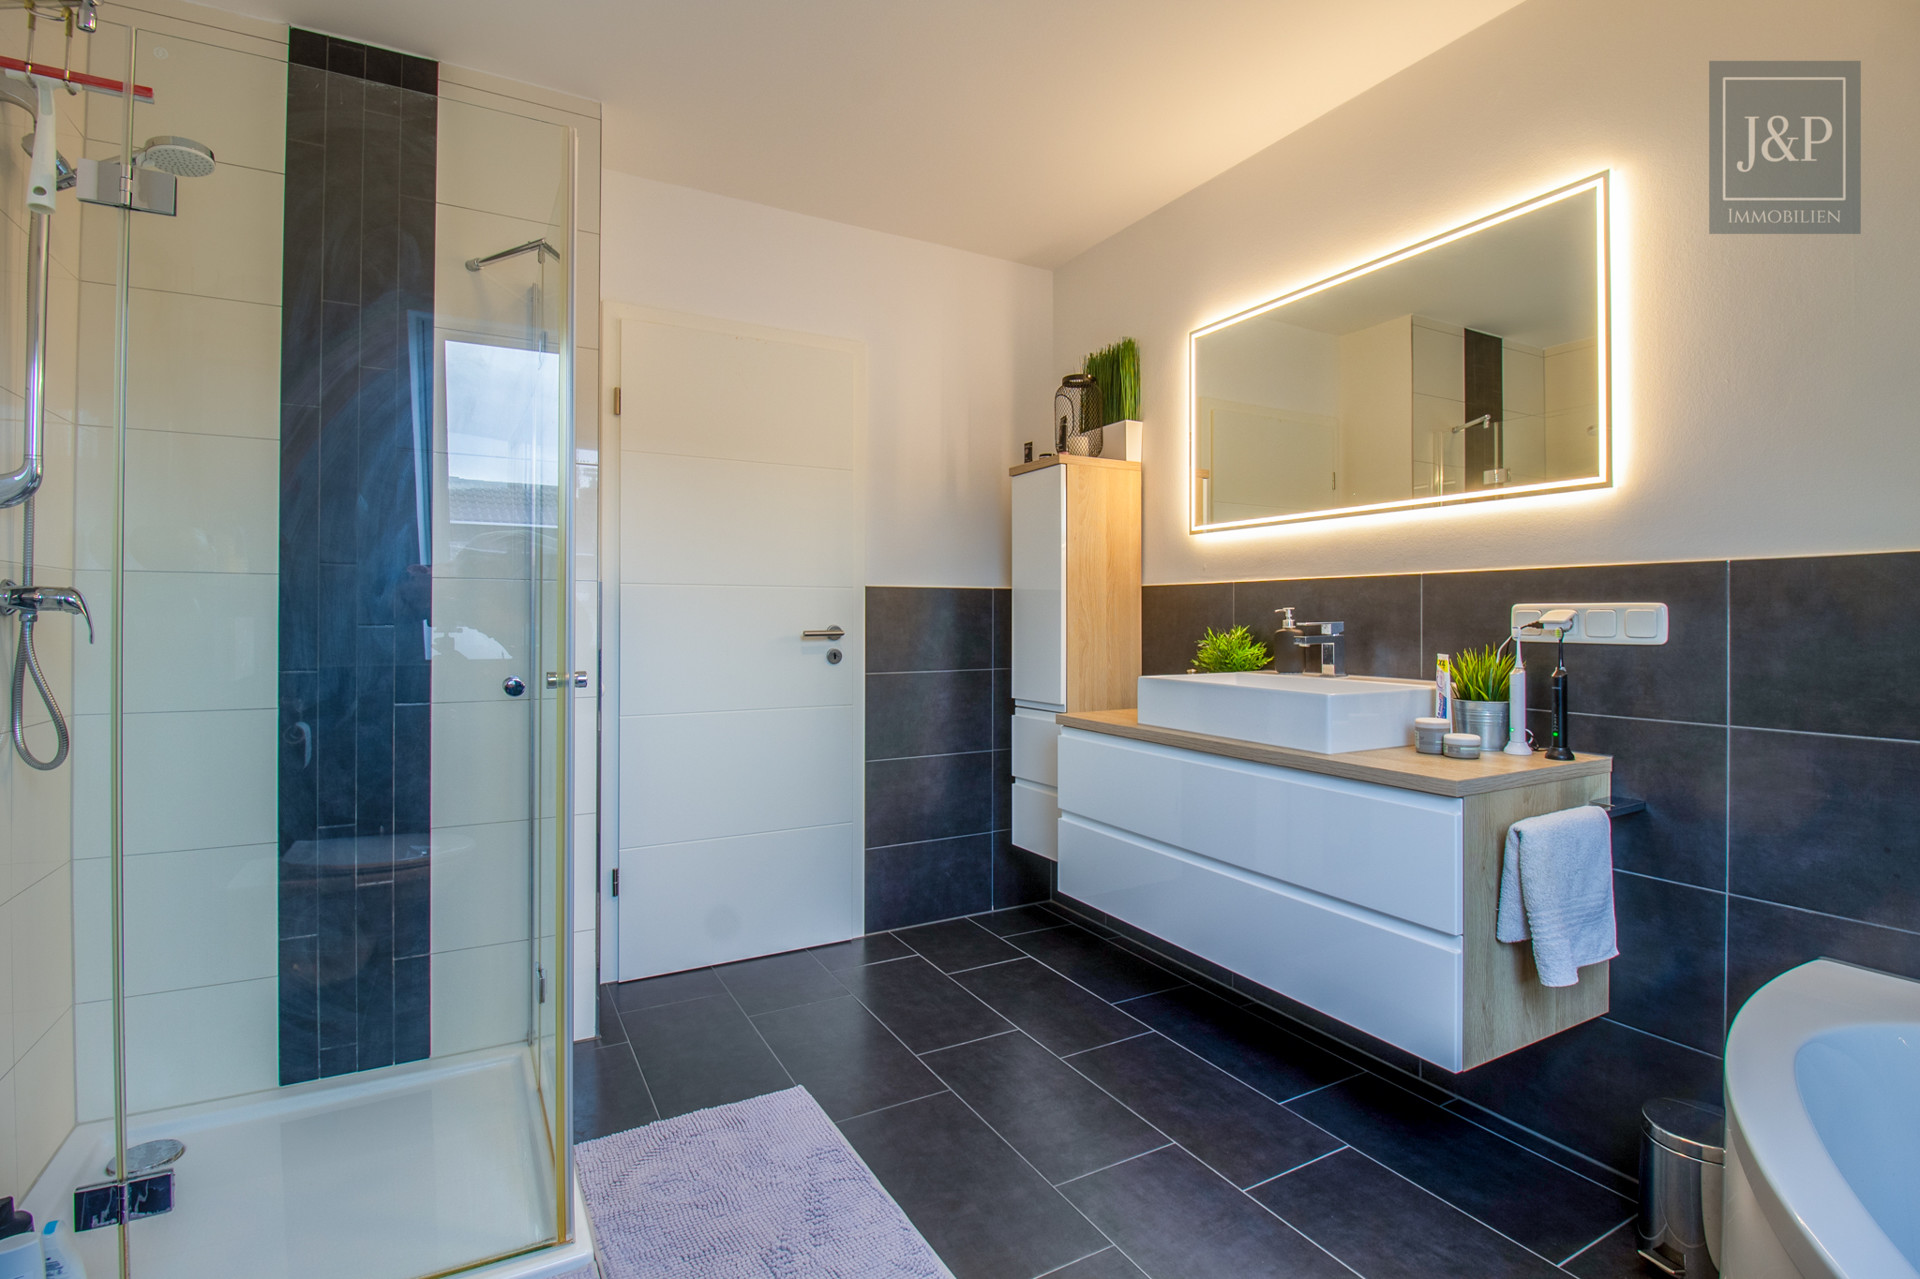 Energieeffizient, Luxuriös & offen gestaltet: Einzigartige Maisonettewohnung zentral in Erzhausen. - Badezimmer